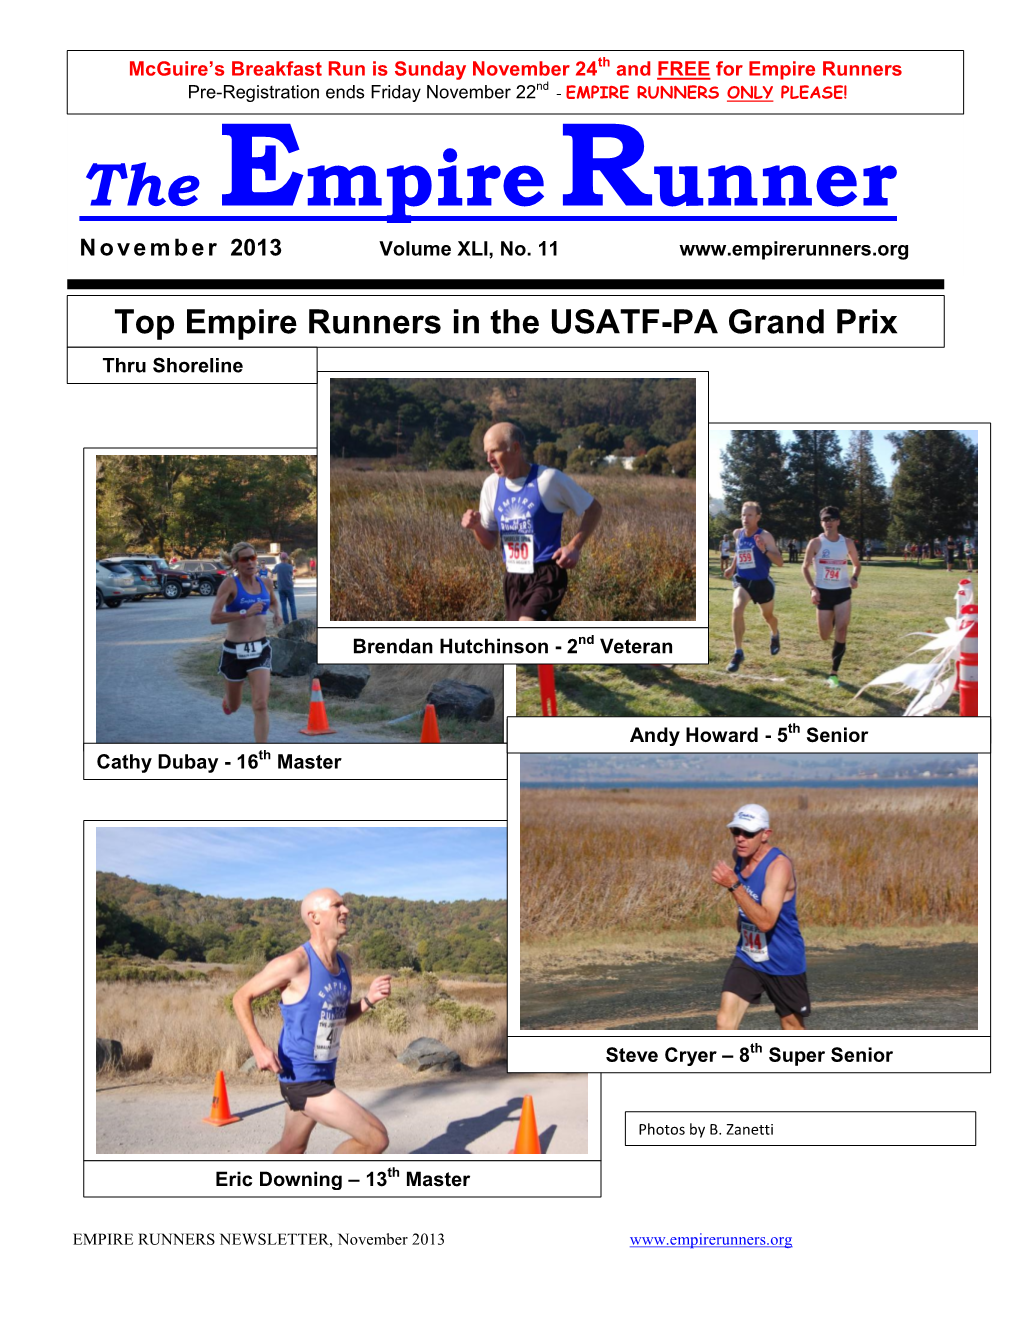 Empire Runners Club Formed in 1975 So It Is Kilos (10-Km Loop)